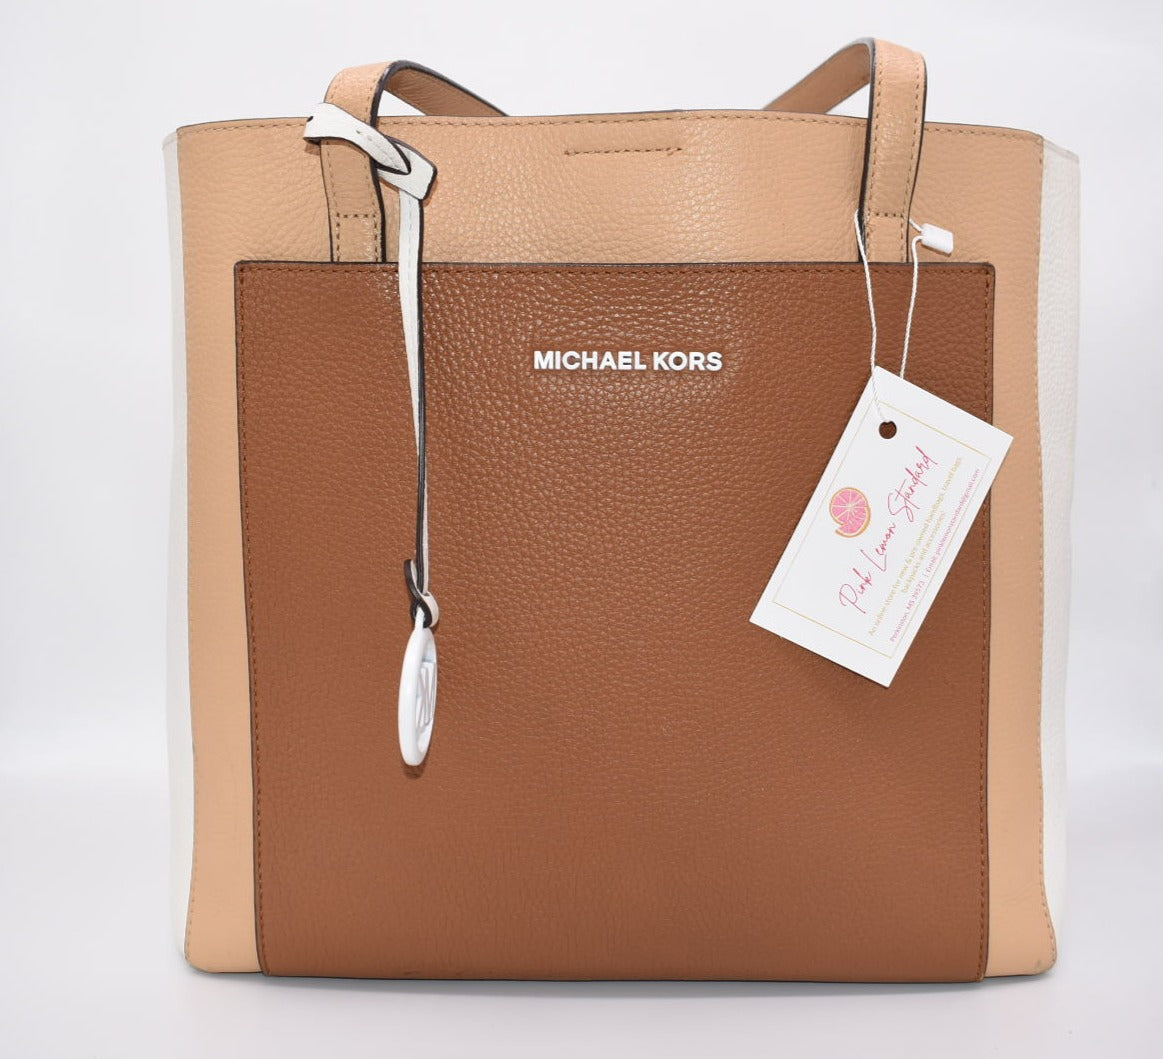 Michael Kors Leather "Gemma" Large Pocket Tote Bag